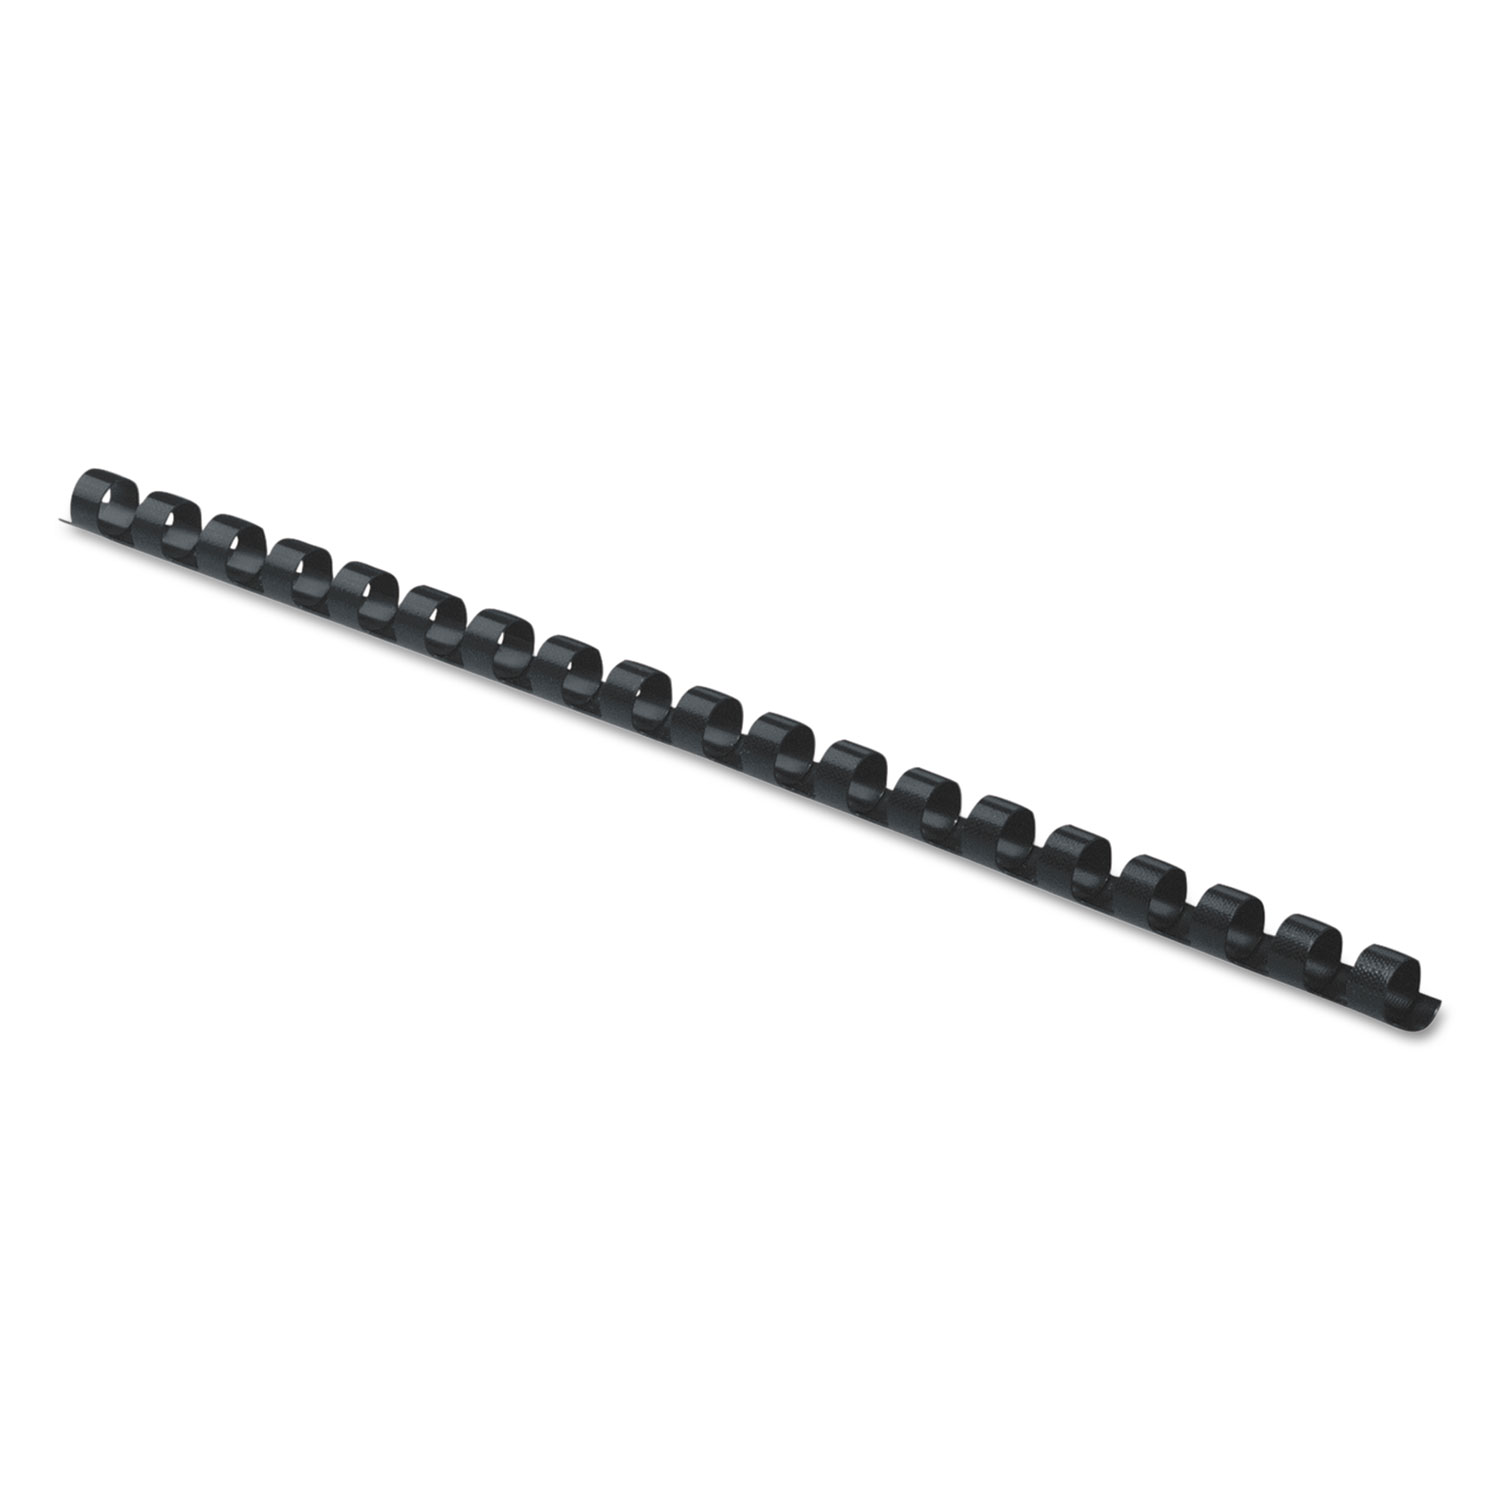 Plastic Comb Bindings, 1/4 Diameter, 20 Sheet Capacity, Black, 100 Combs/Pack